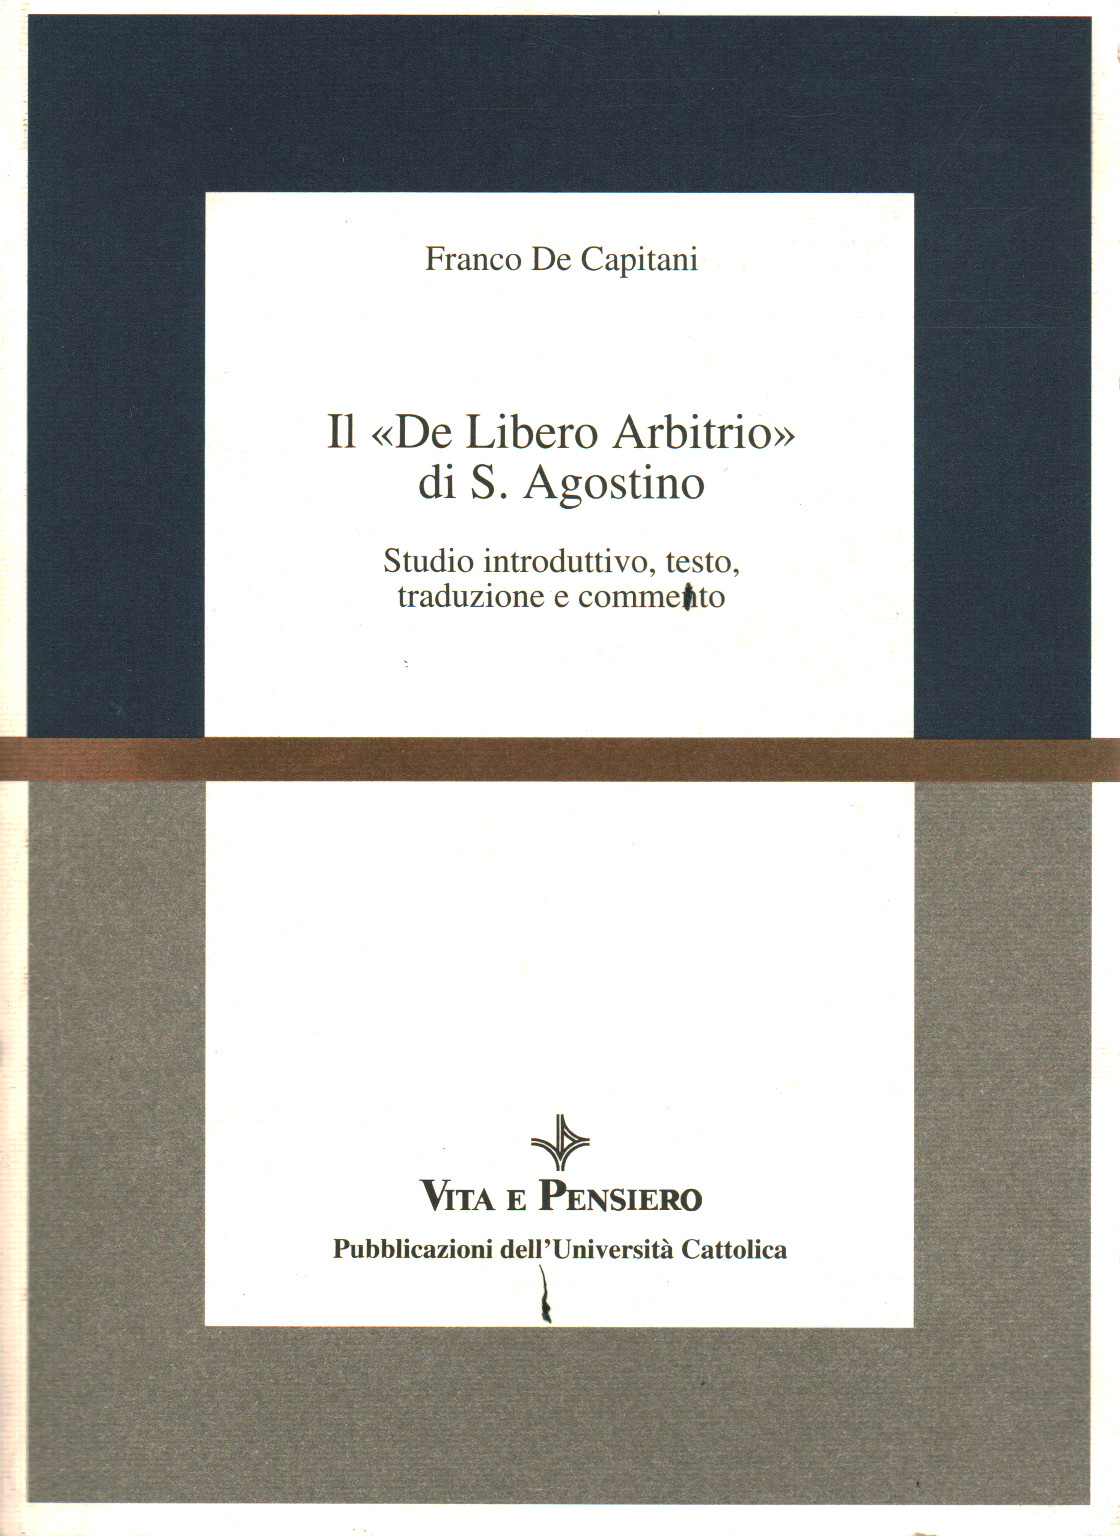 Il "De Libero Arbitrio" di S.Agostino, s.a.